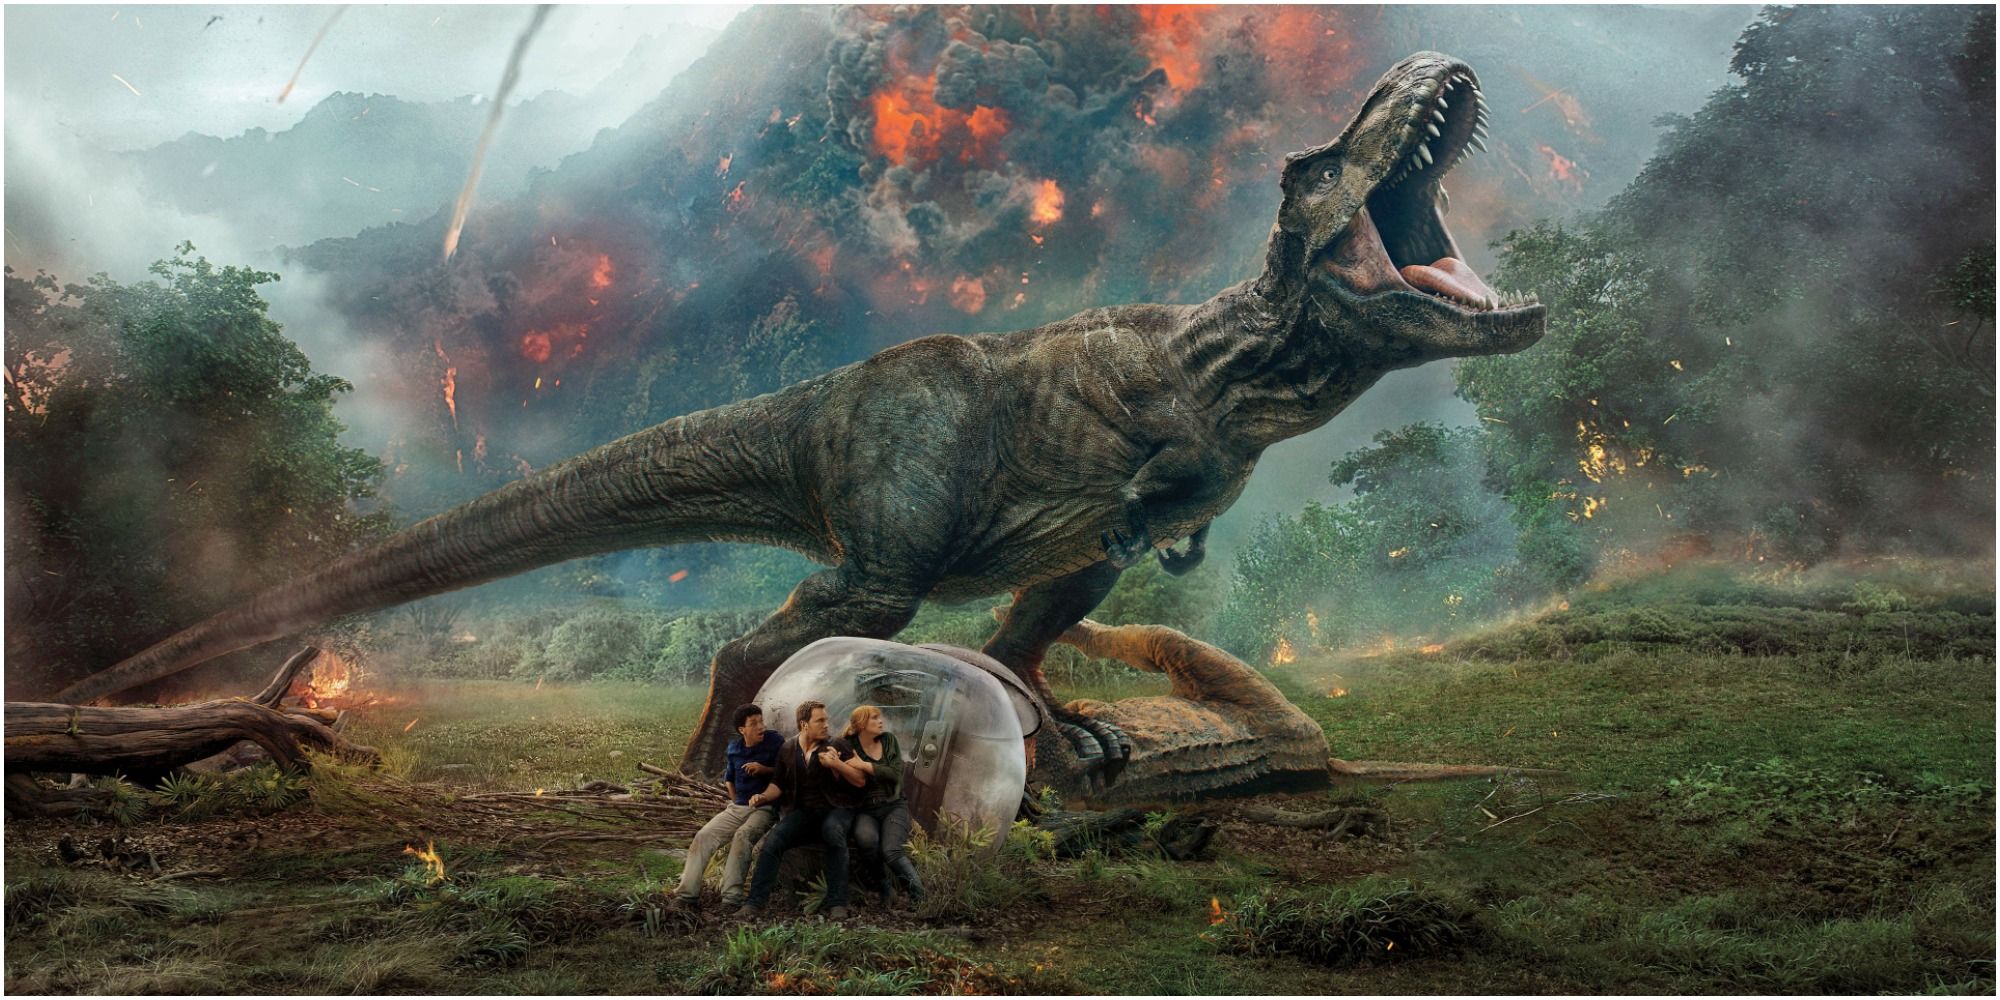 Jurassic World - Fallen Kingdom